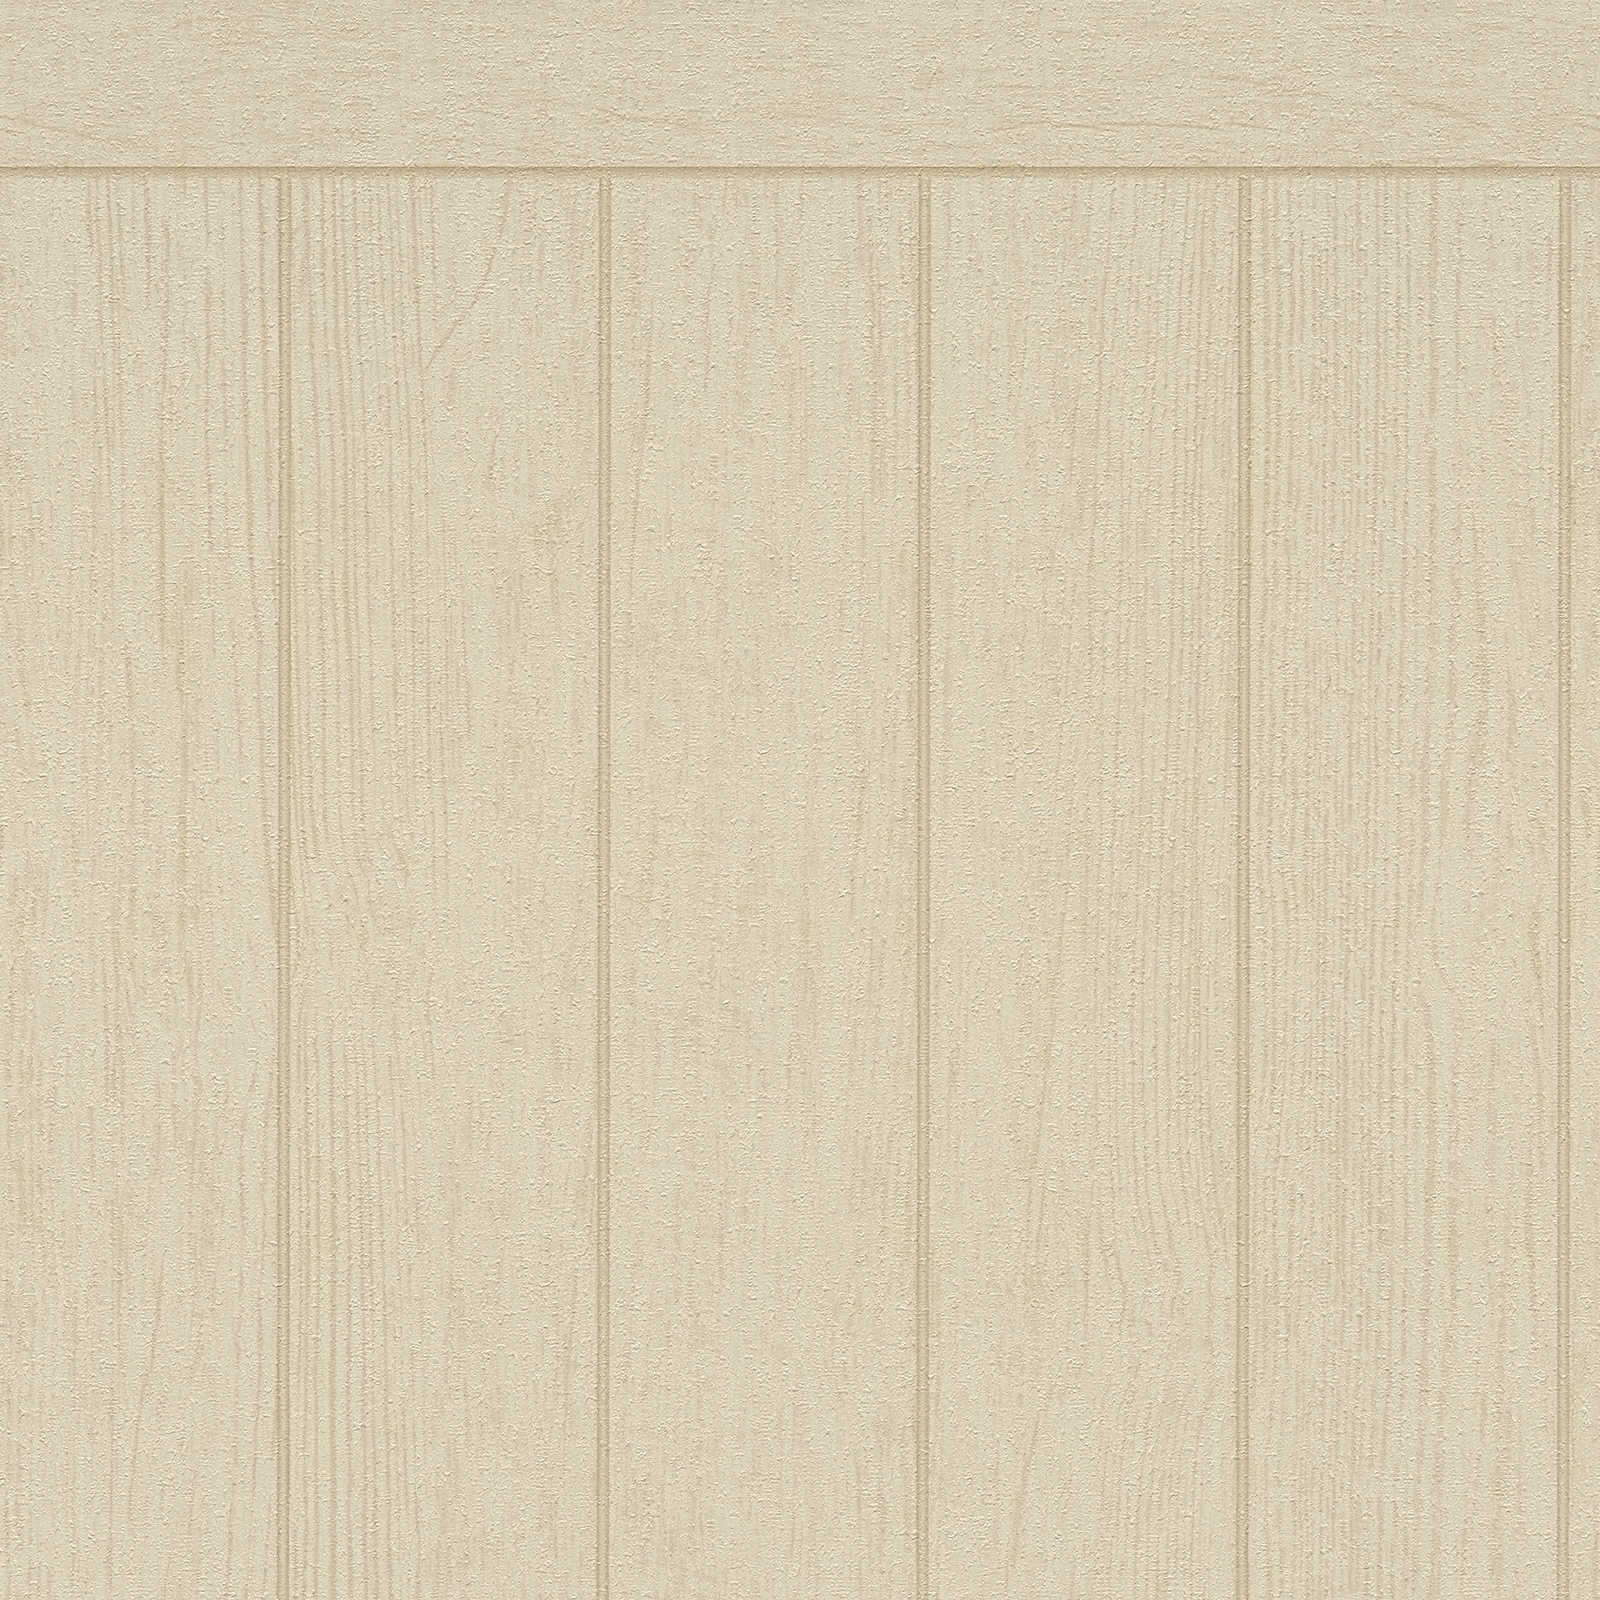 Pannello da parete in tessuto non tessuto con aspetto di travi in legno - beige, marrone
